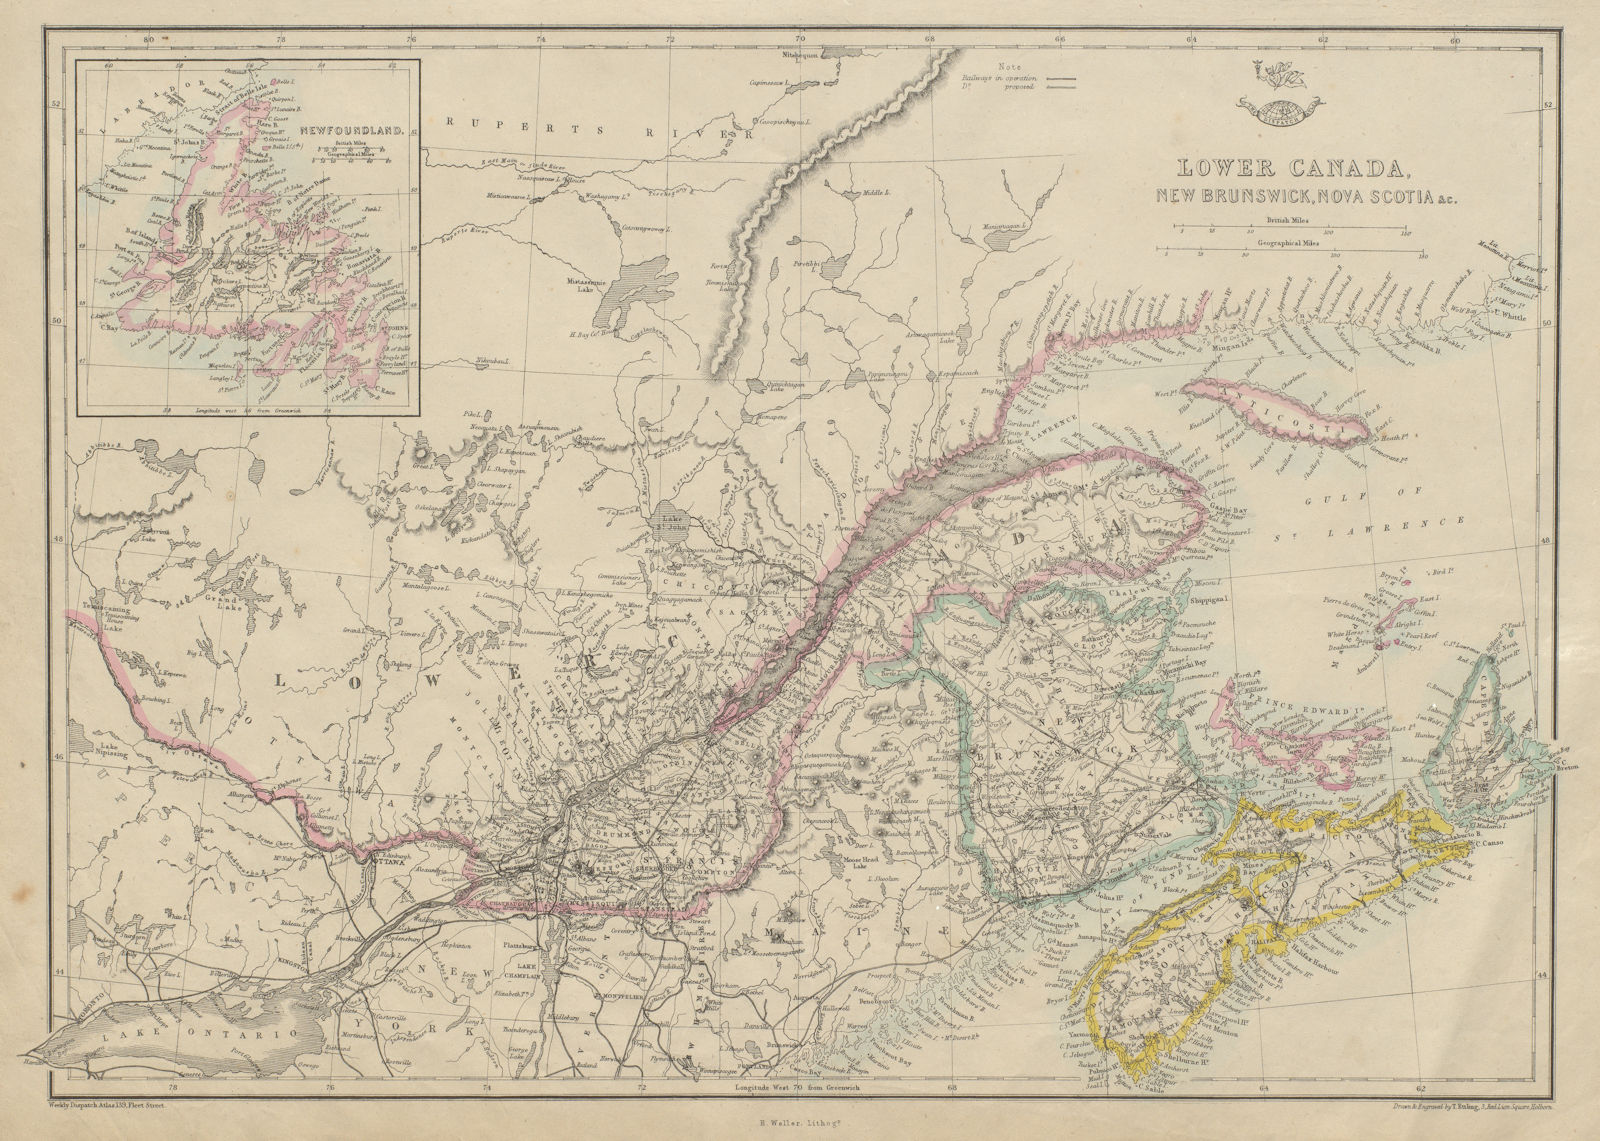 'Lower Canada, New Brunswick, Nova Scotia' Quebec & Maritimes. ETTLING 1862 map